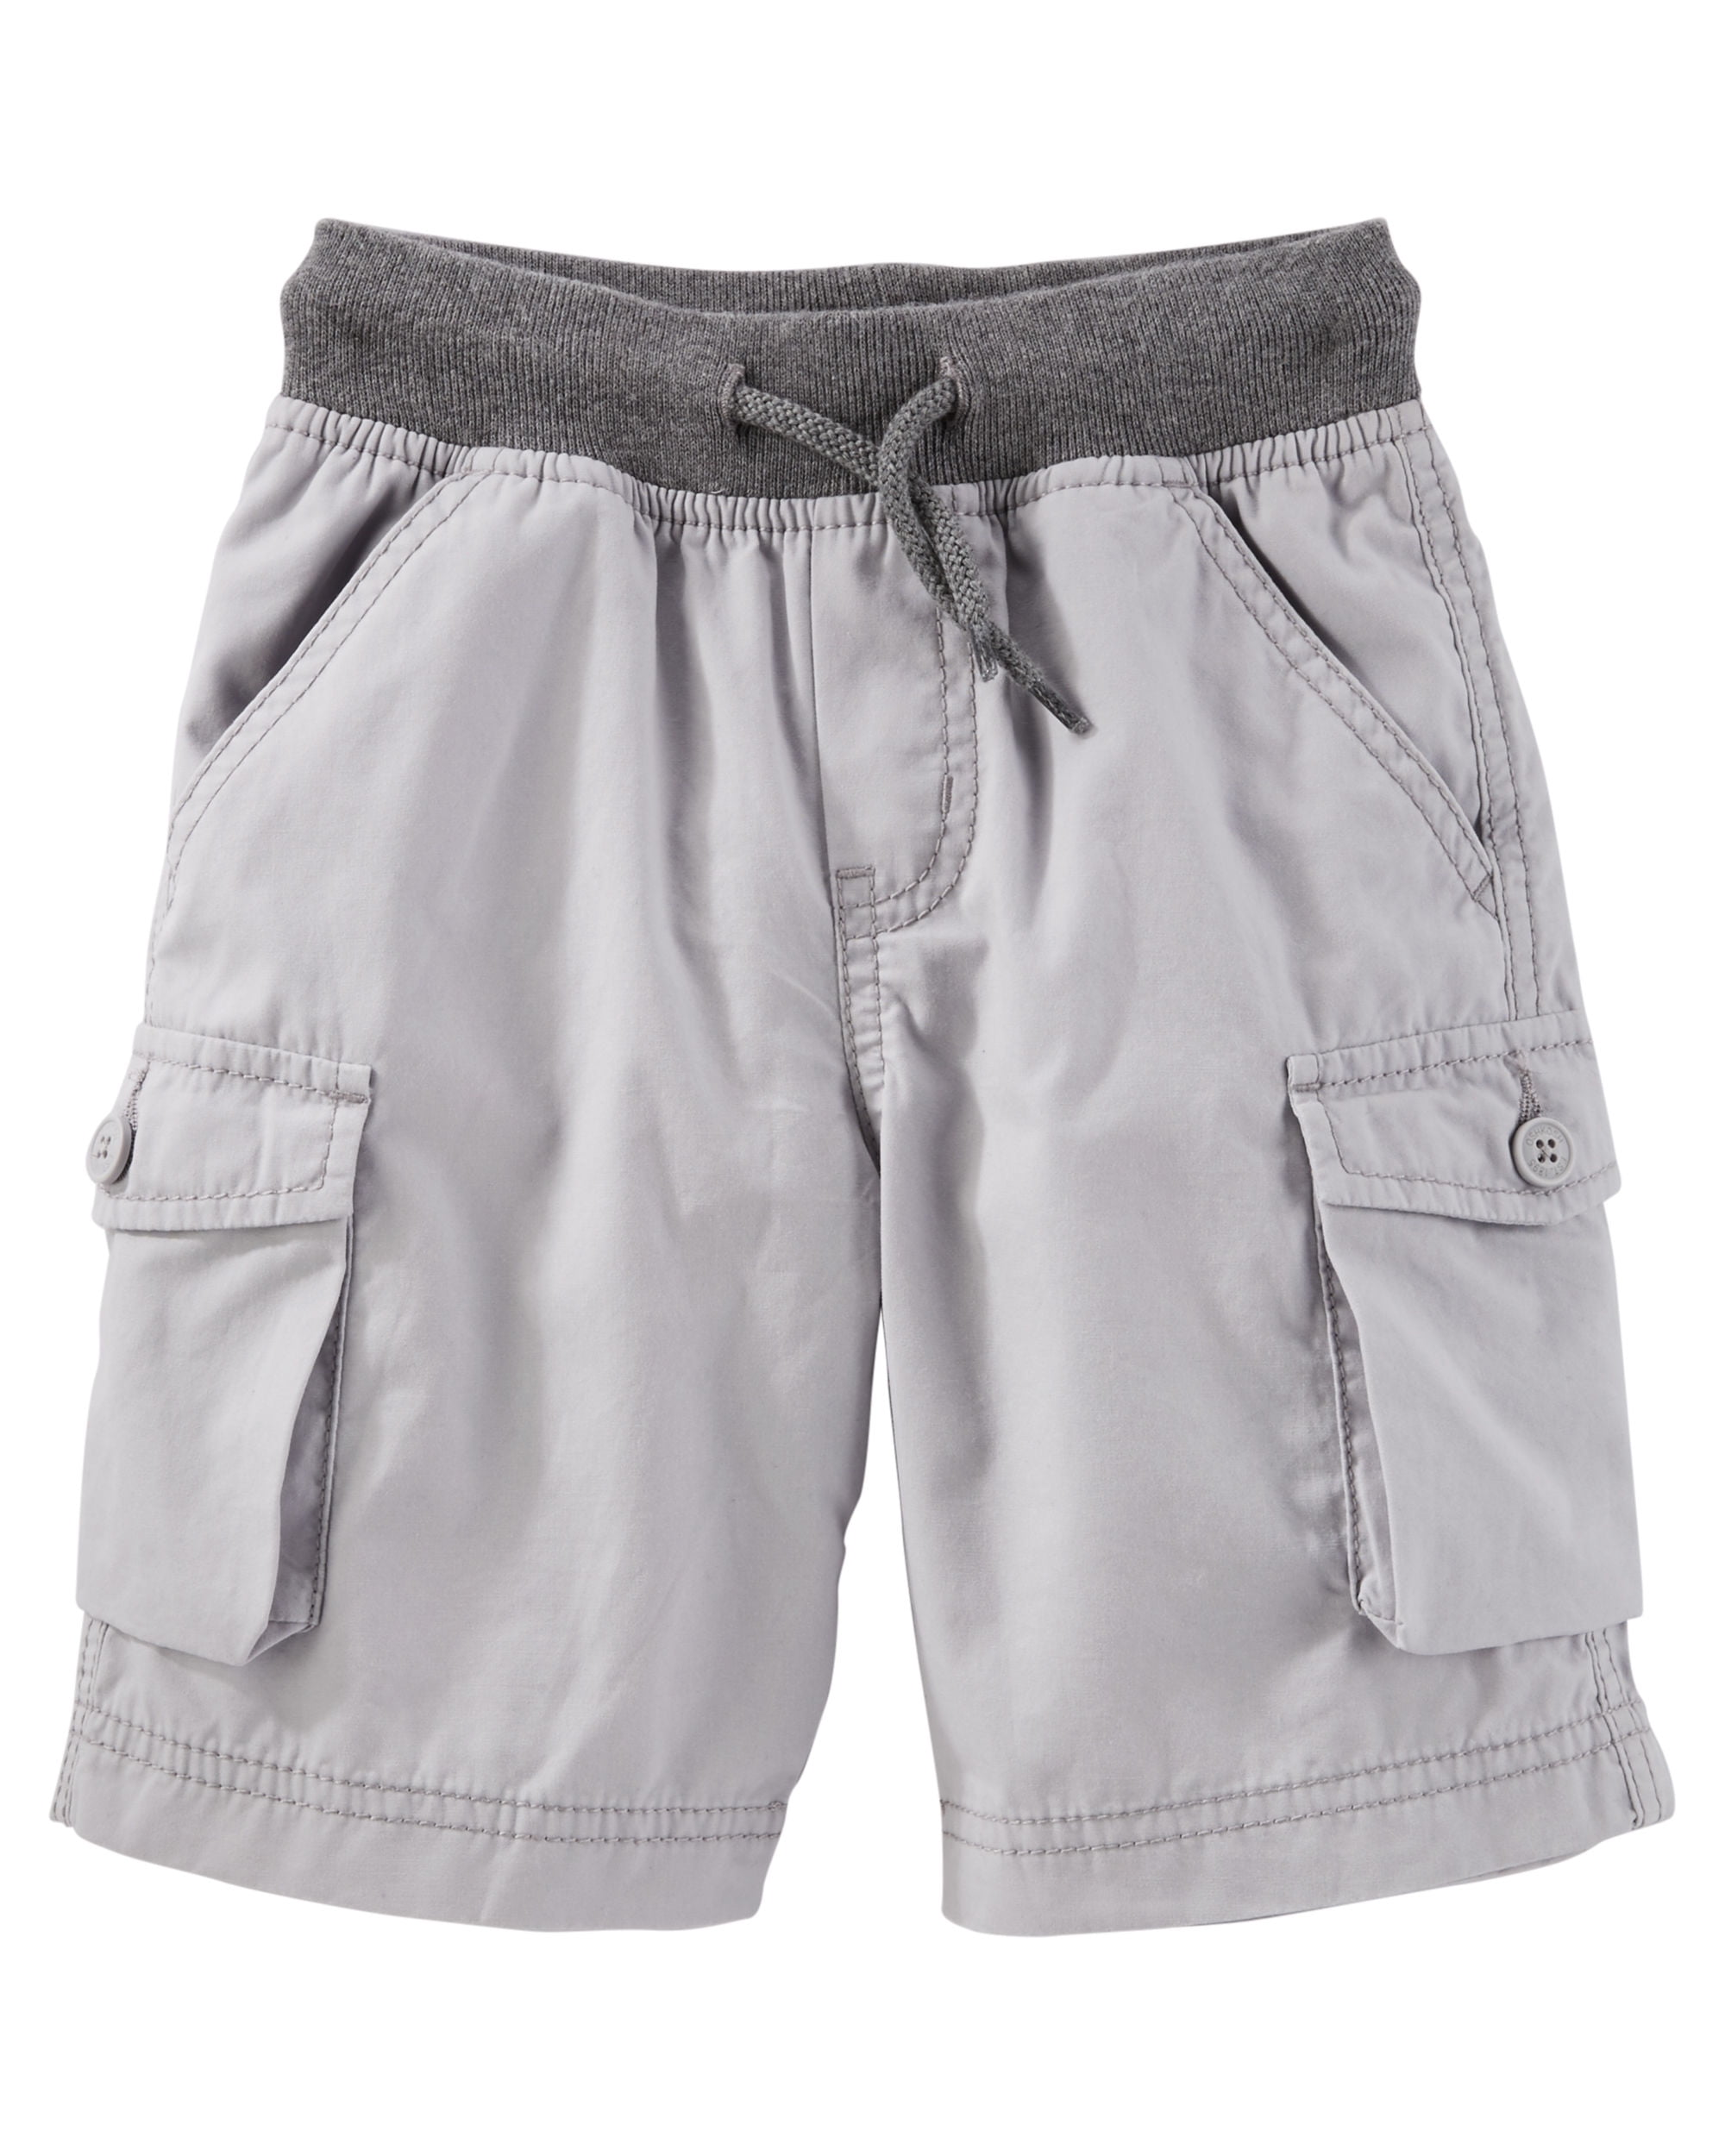 OshKosh Baby Boys Cargo Shorts